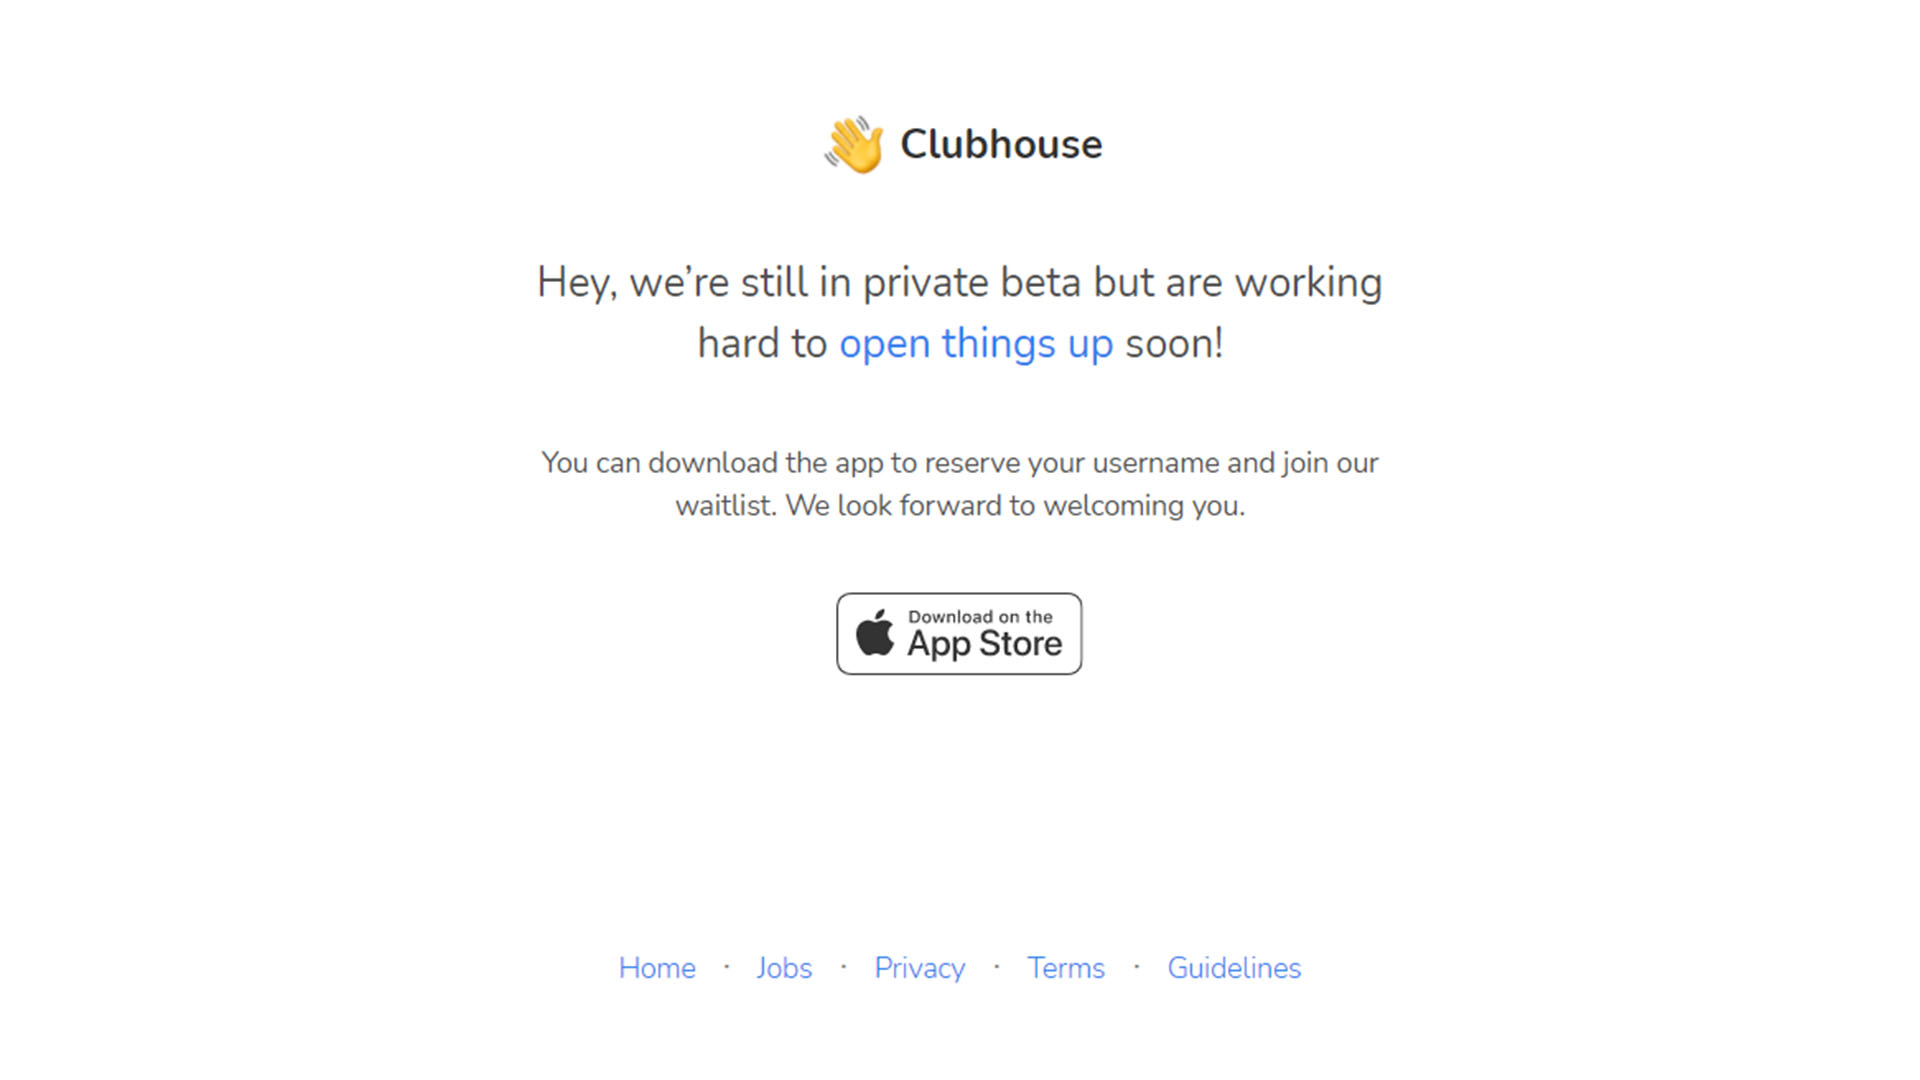 Clubhouse, por ahora solo disponible en iOS, y bajo un modelo de invitación